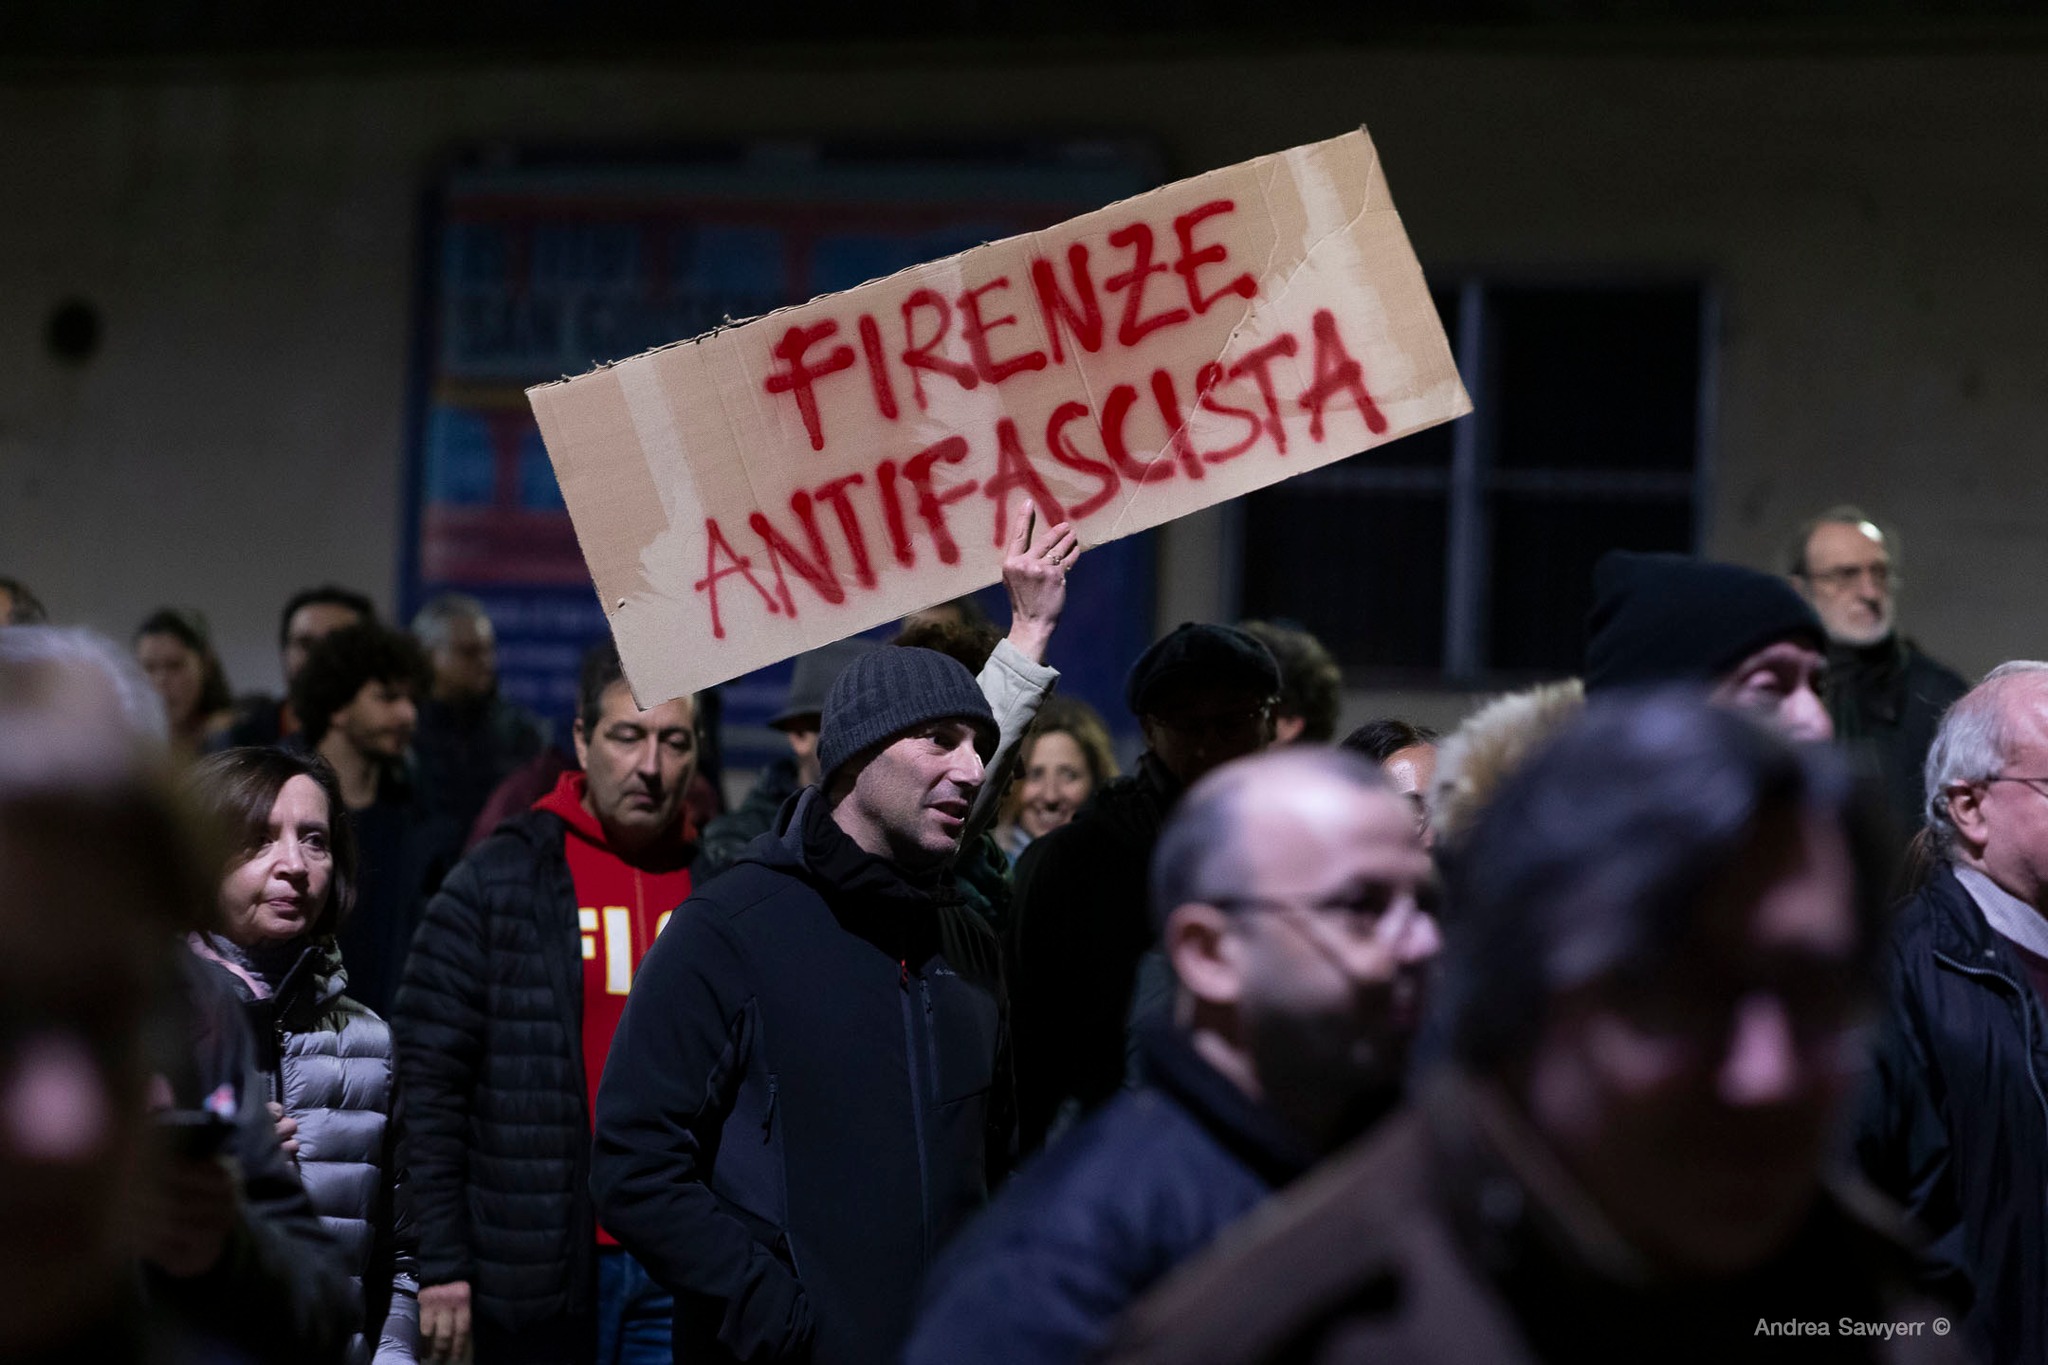 Il ministro attacca la preside di Firenze invece di condannare lo squadrismo fascista